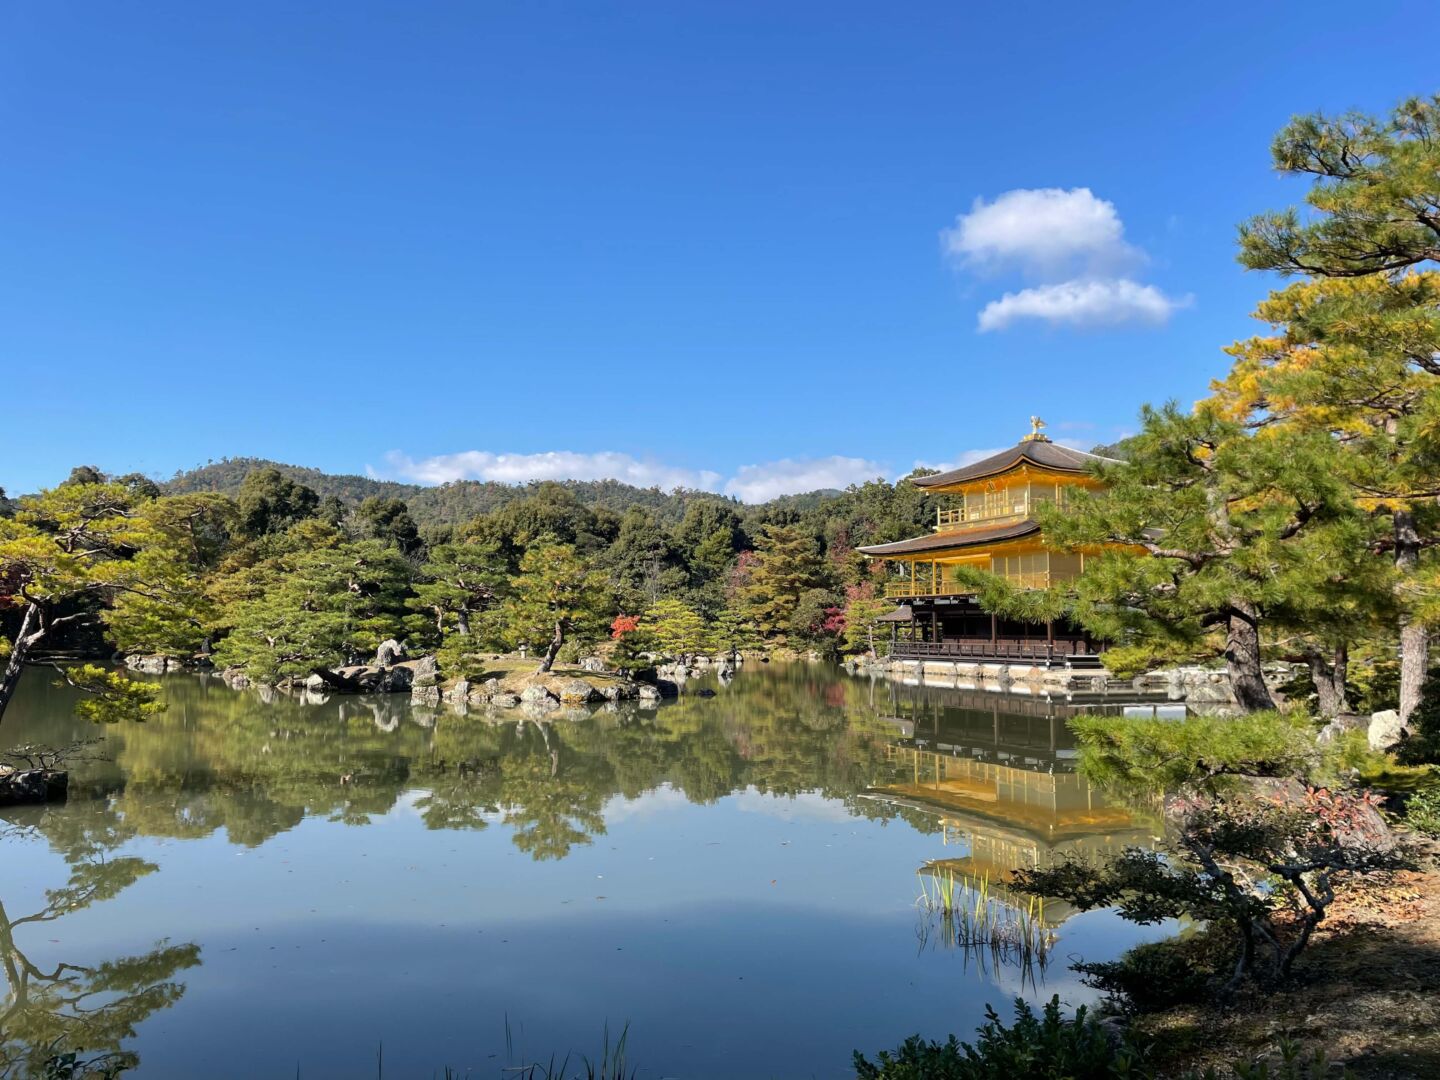 Um lago no centro reflete o céu azul, o templo no lado direito e as árvores verdes.